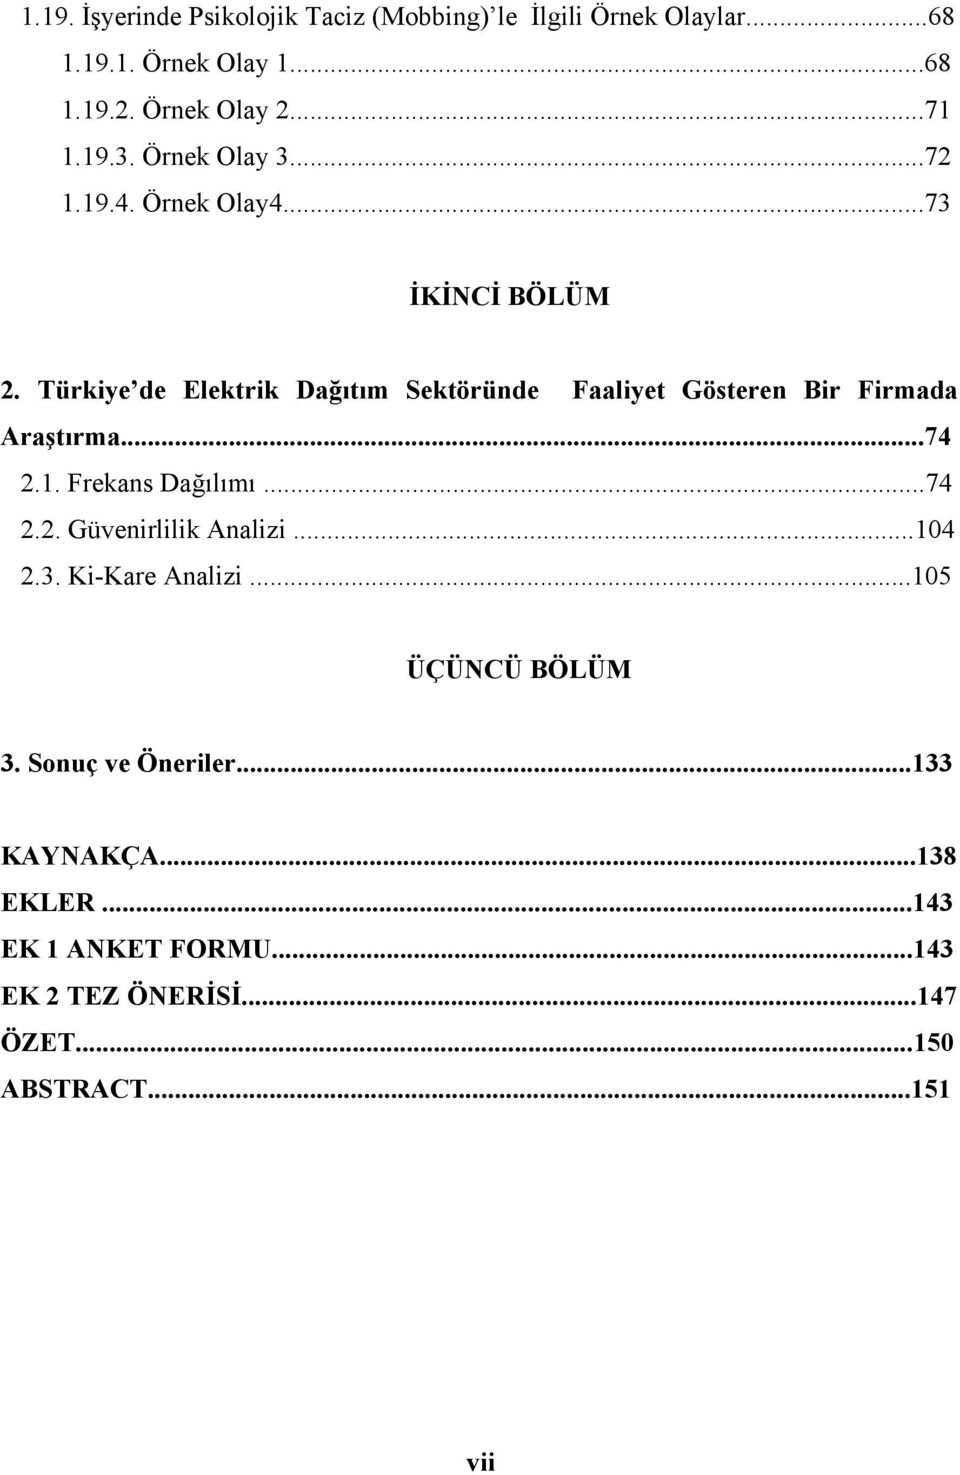 Türkiye de Elektrik Dağıtım Sektöründe Faaliyet Gösteren Bir Firmada Araştırma...74 2.1. Frekans Dağılımı...74 2.2. Güvenirlilik Analizi.